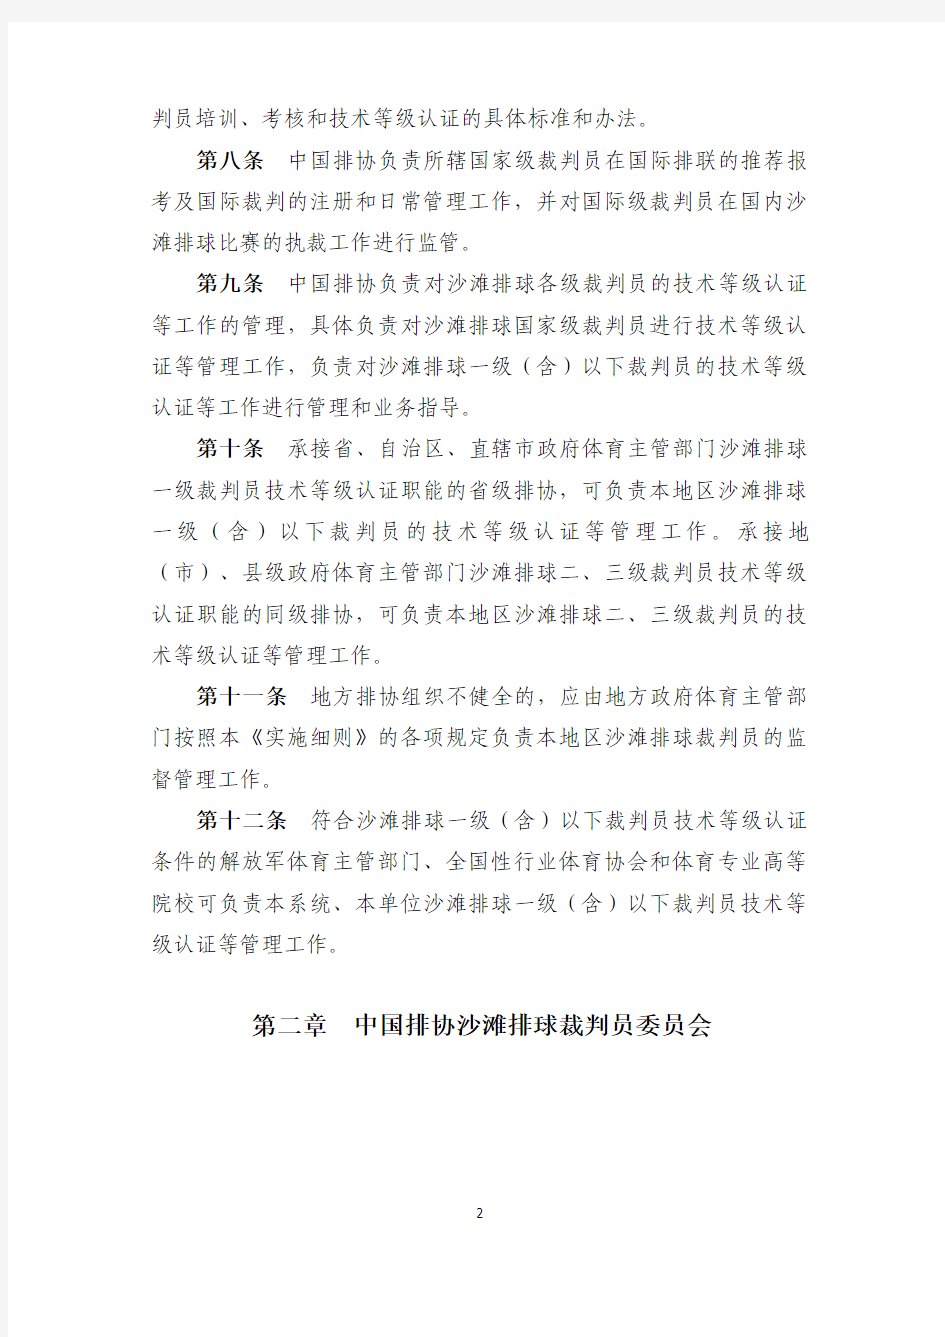 中国排球协会沙滩排球裁判员管理实施细则(征求意见稿)-2